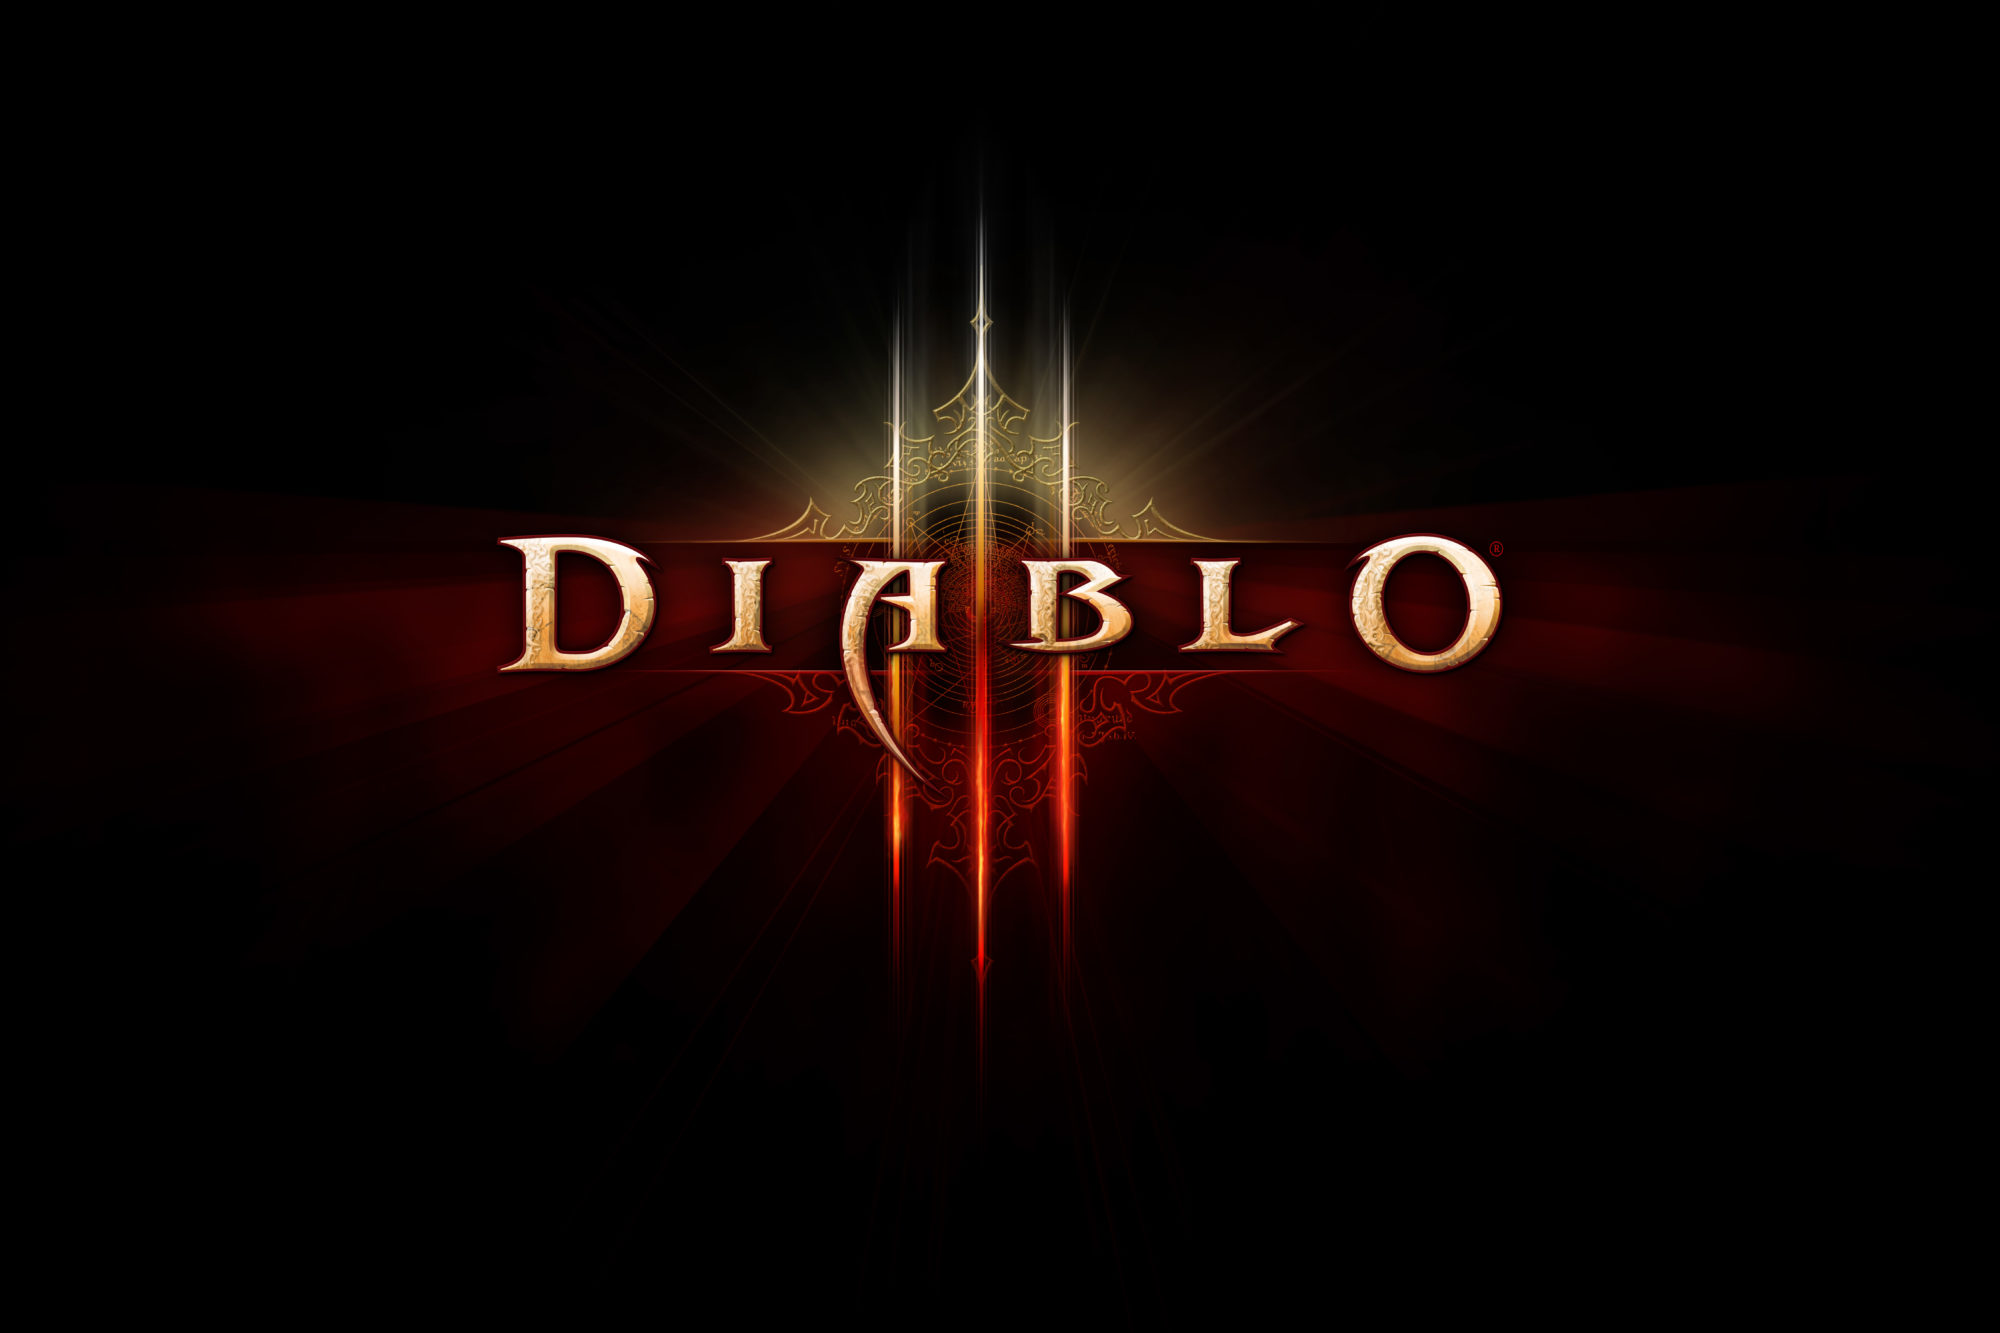 Connaissez-vous bien Diablo 3, avant de vous lancer sur Diablo 4 ?